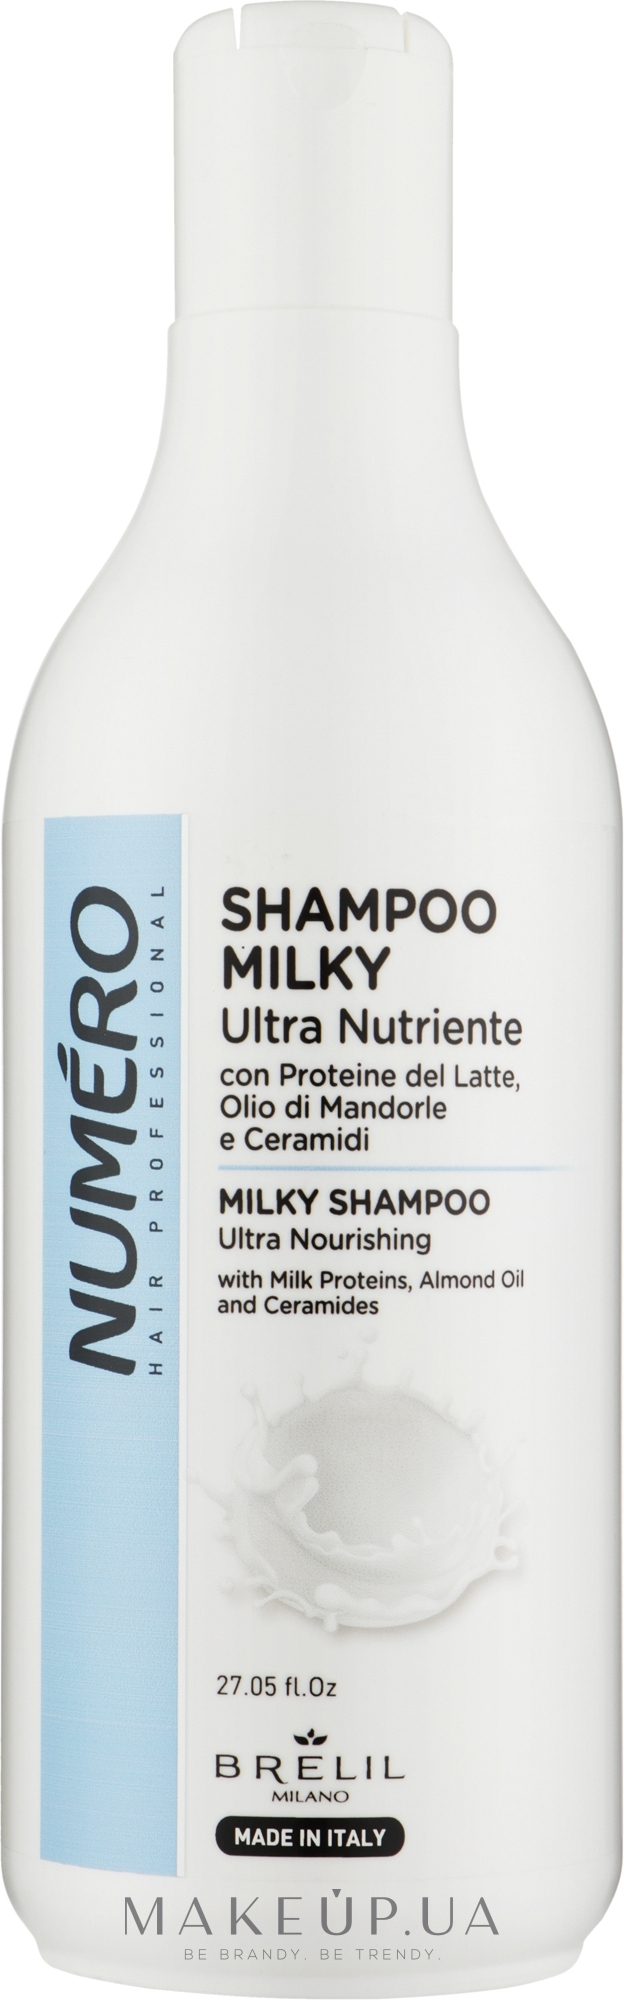 Шампунь для волос ультрапитательный - Brelil Numero Shampoo Milky Ultra Nutriente — фото 800ml